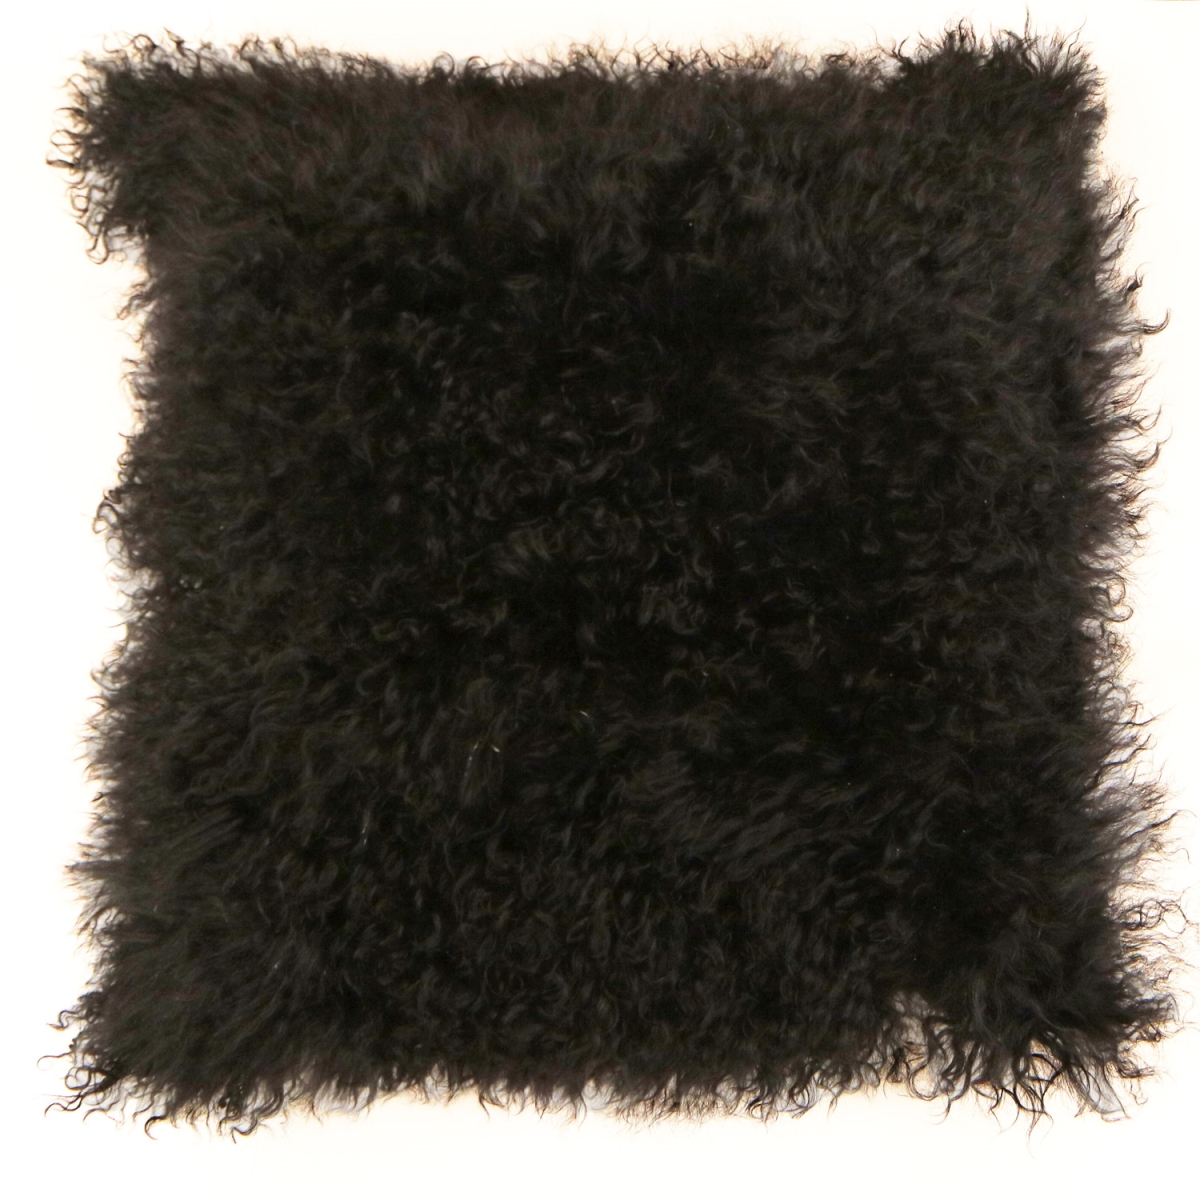 80387 Mongolian Fur Pillow, Black